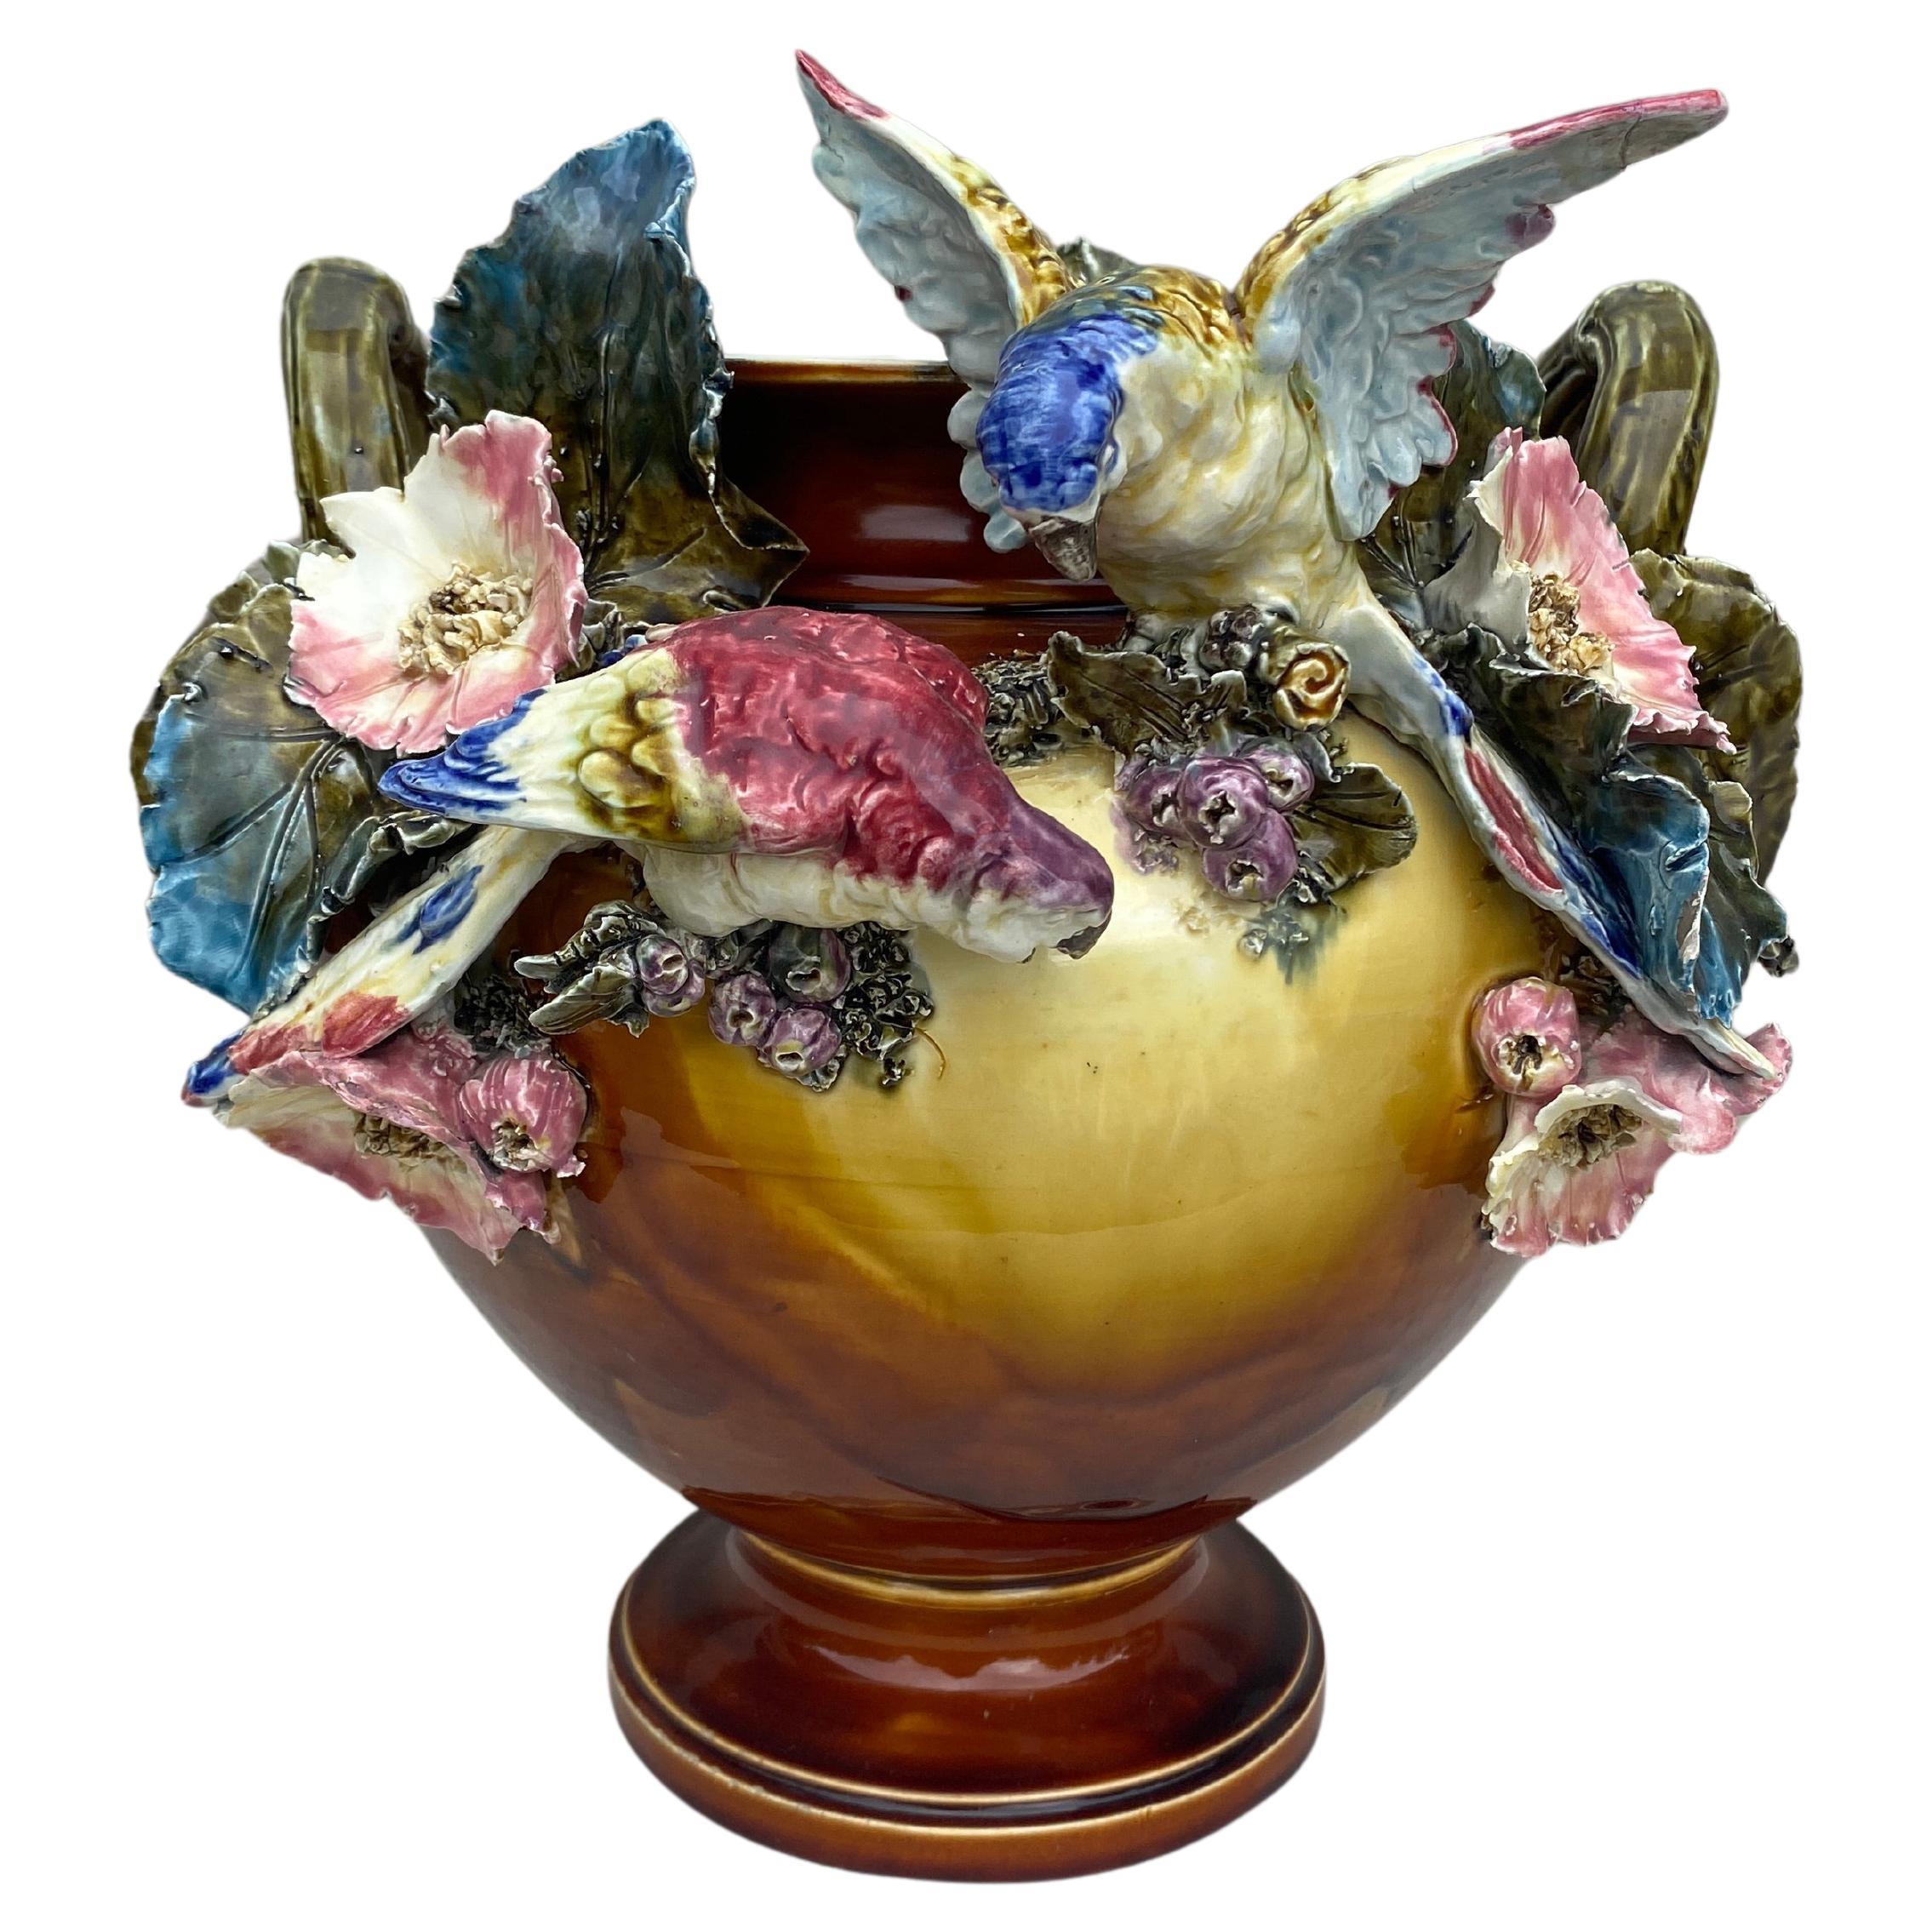 Grand pot à cache autrichien du 19e siècle, perroquets et fleurs.
Hauteur / 12 pouces.
Diamètre / 12 pouces.